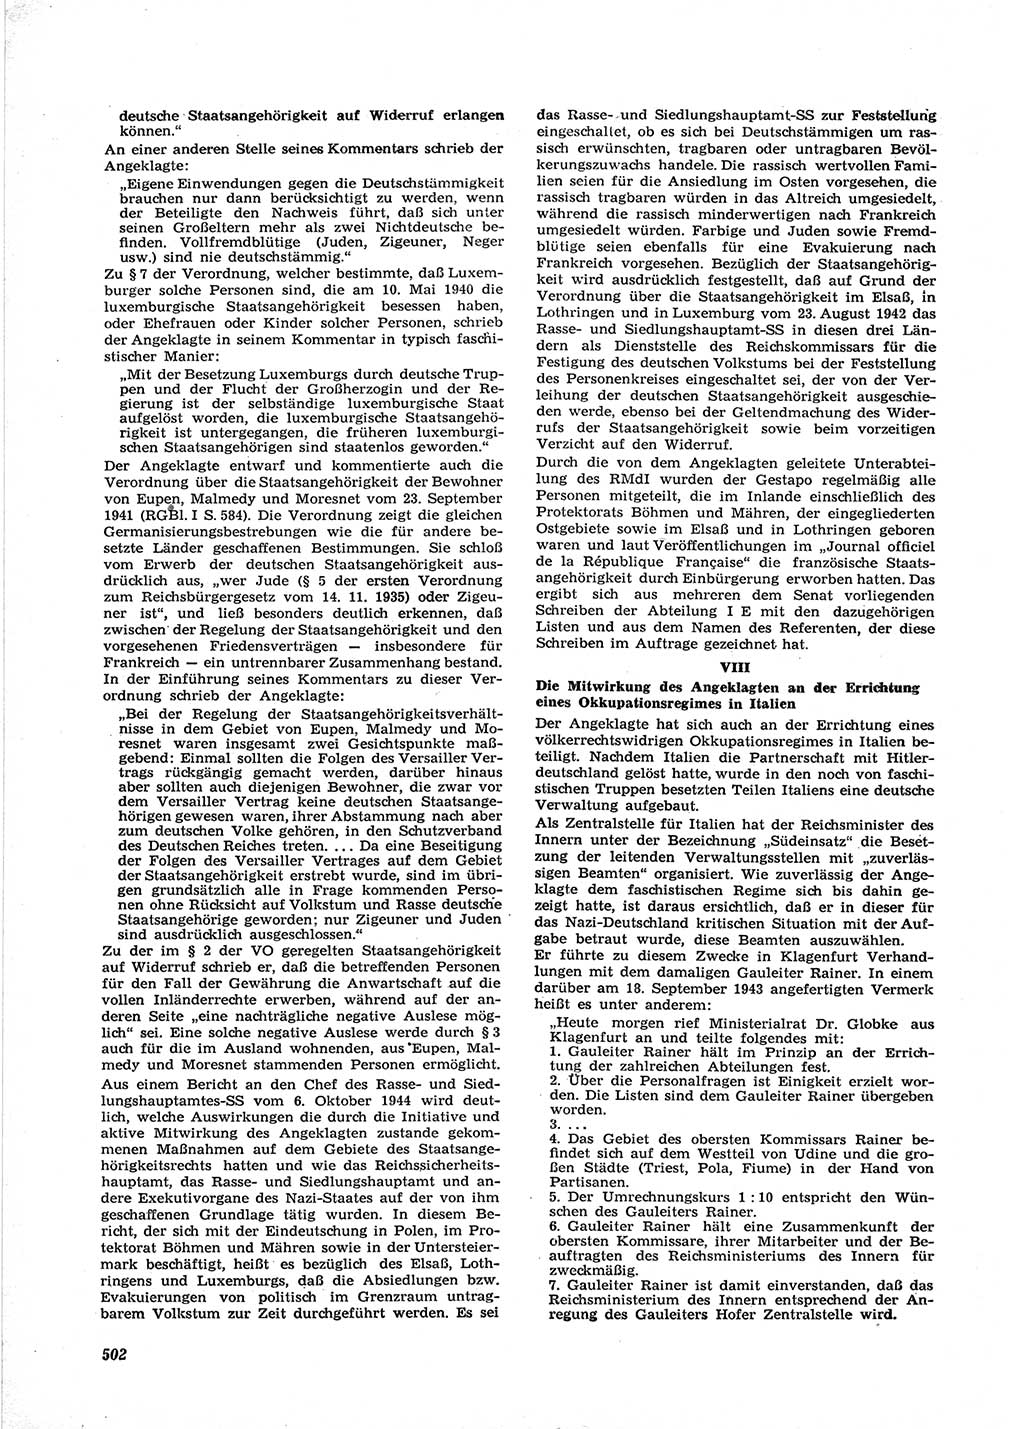 Neue Justiz (NJ), Zeitschrift für Recht und Rechtswissenschaft [Deutsche Demokratische Republik (DDR)], 17. Jahrgang 1963, Seite 502 (NJ DDR 1963, S. 502)